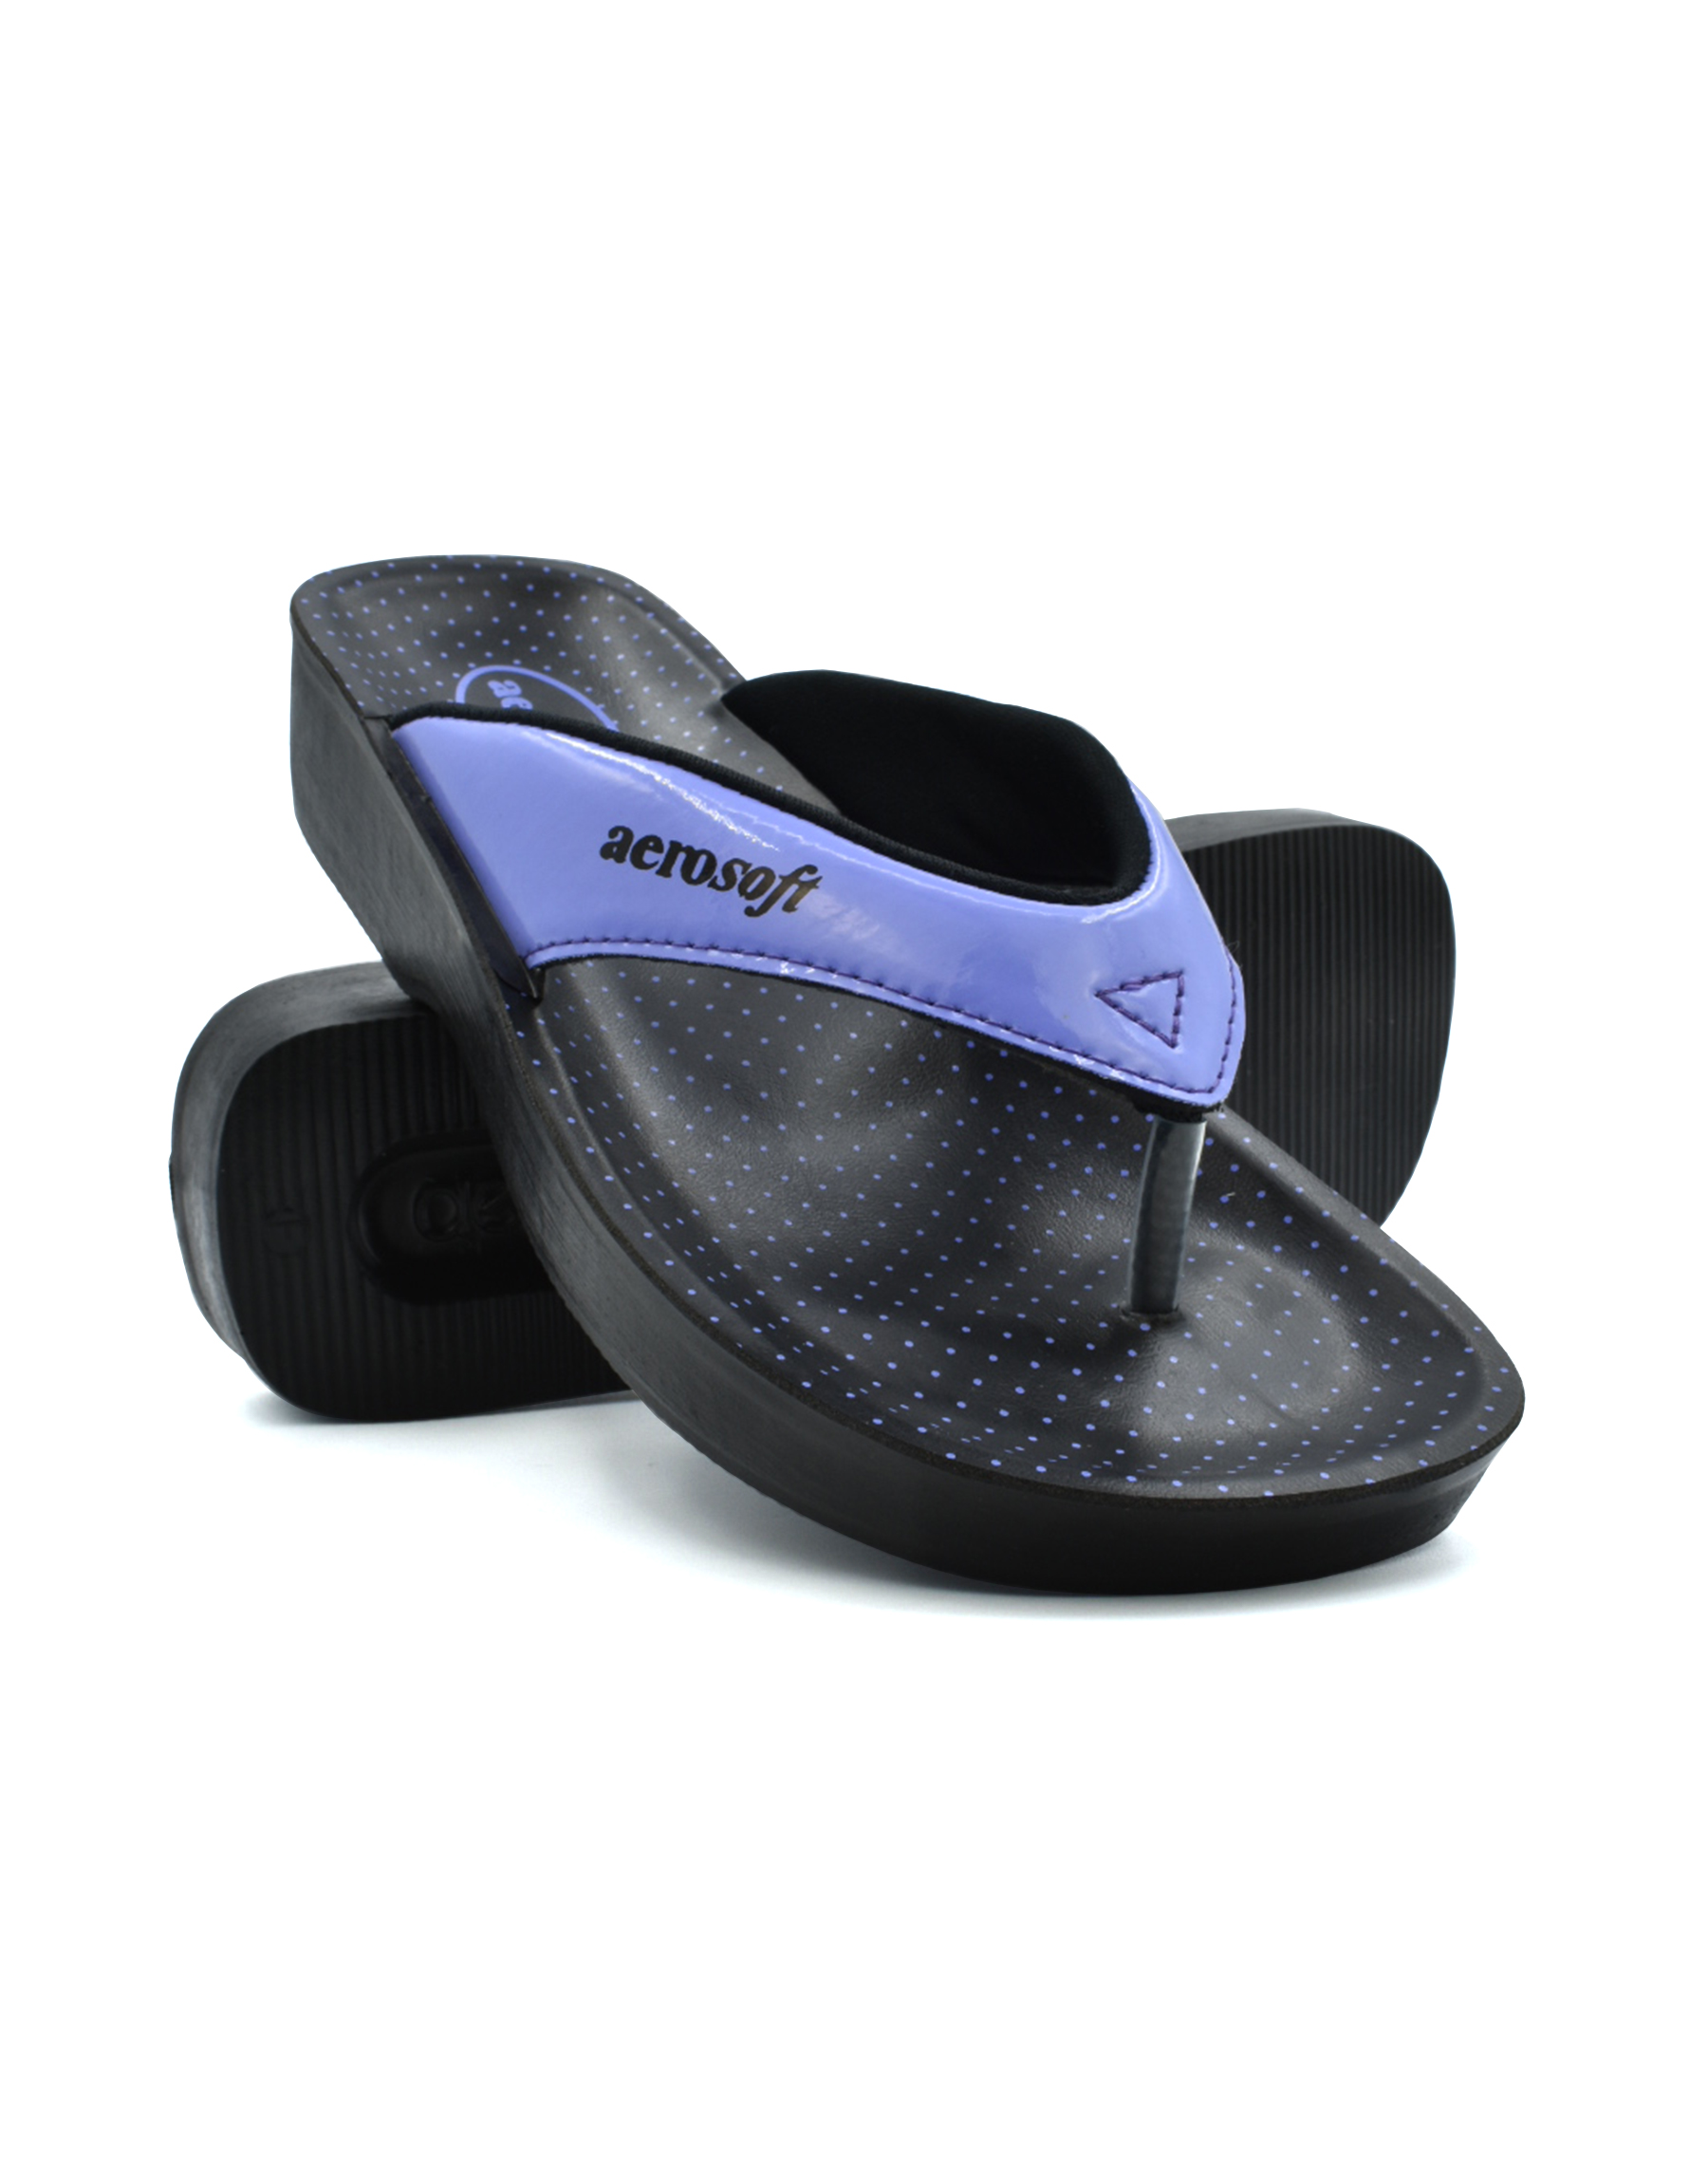 Aerosoft Arch Support Blue Sparkle Gliteratti Flip Flops Sandals 7 Women  NEW BOX | eBay